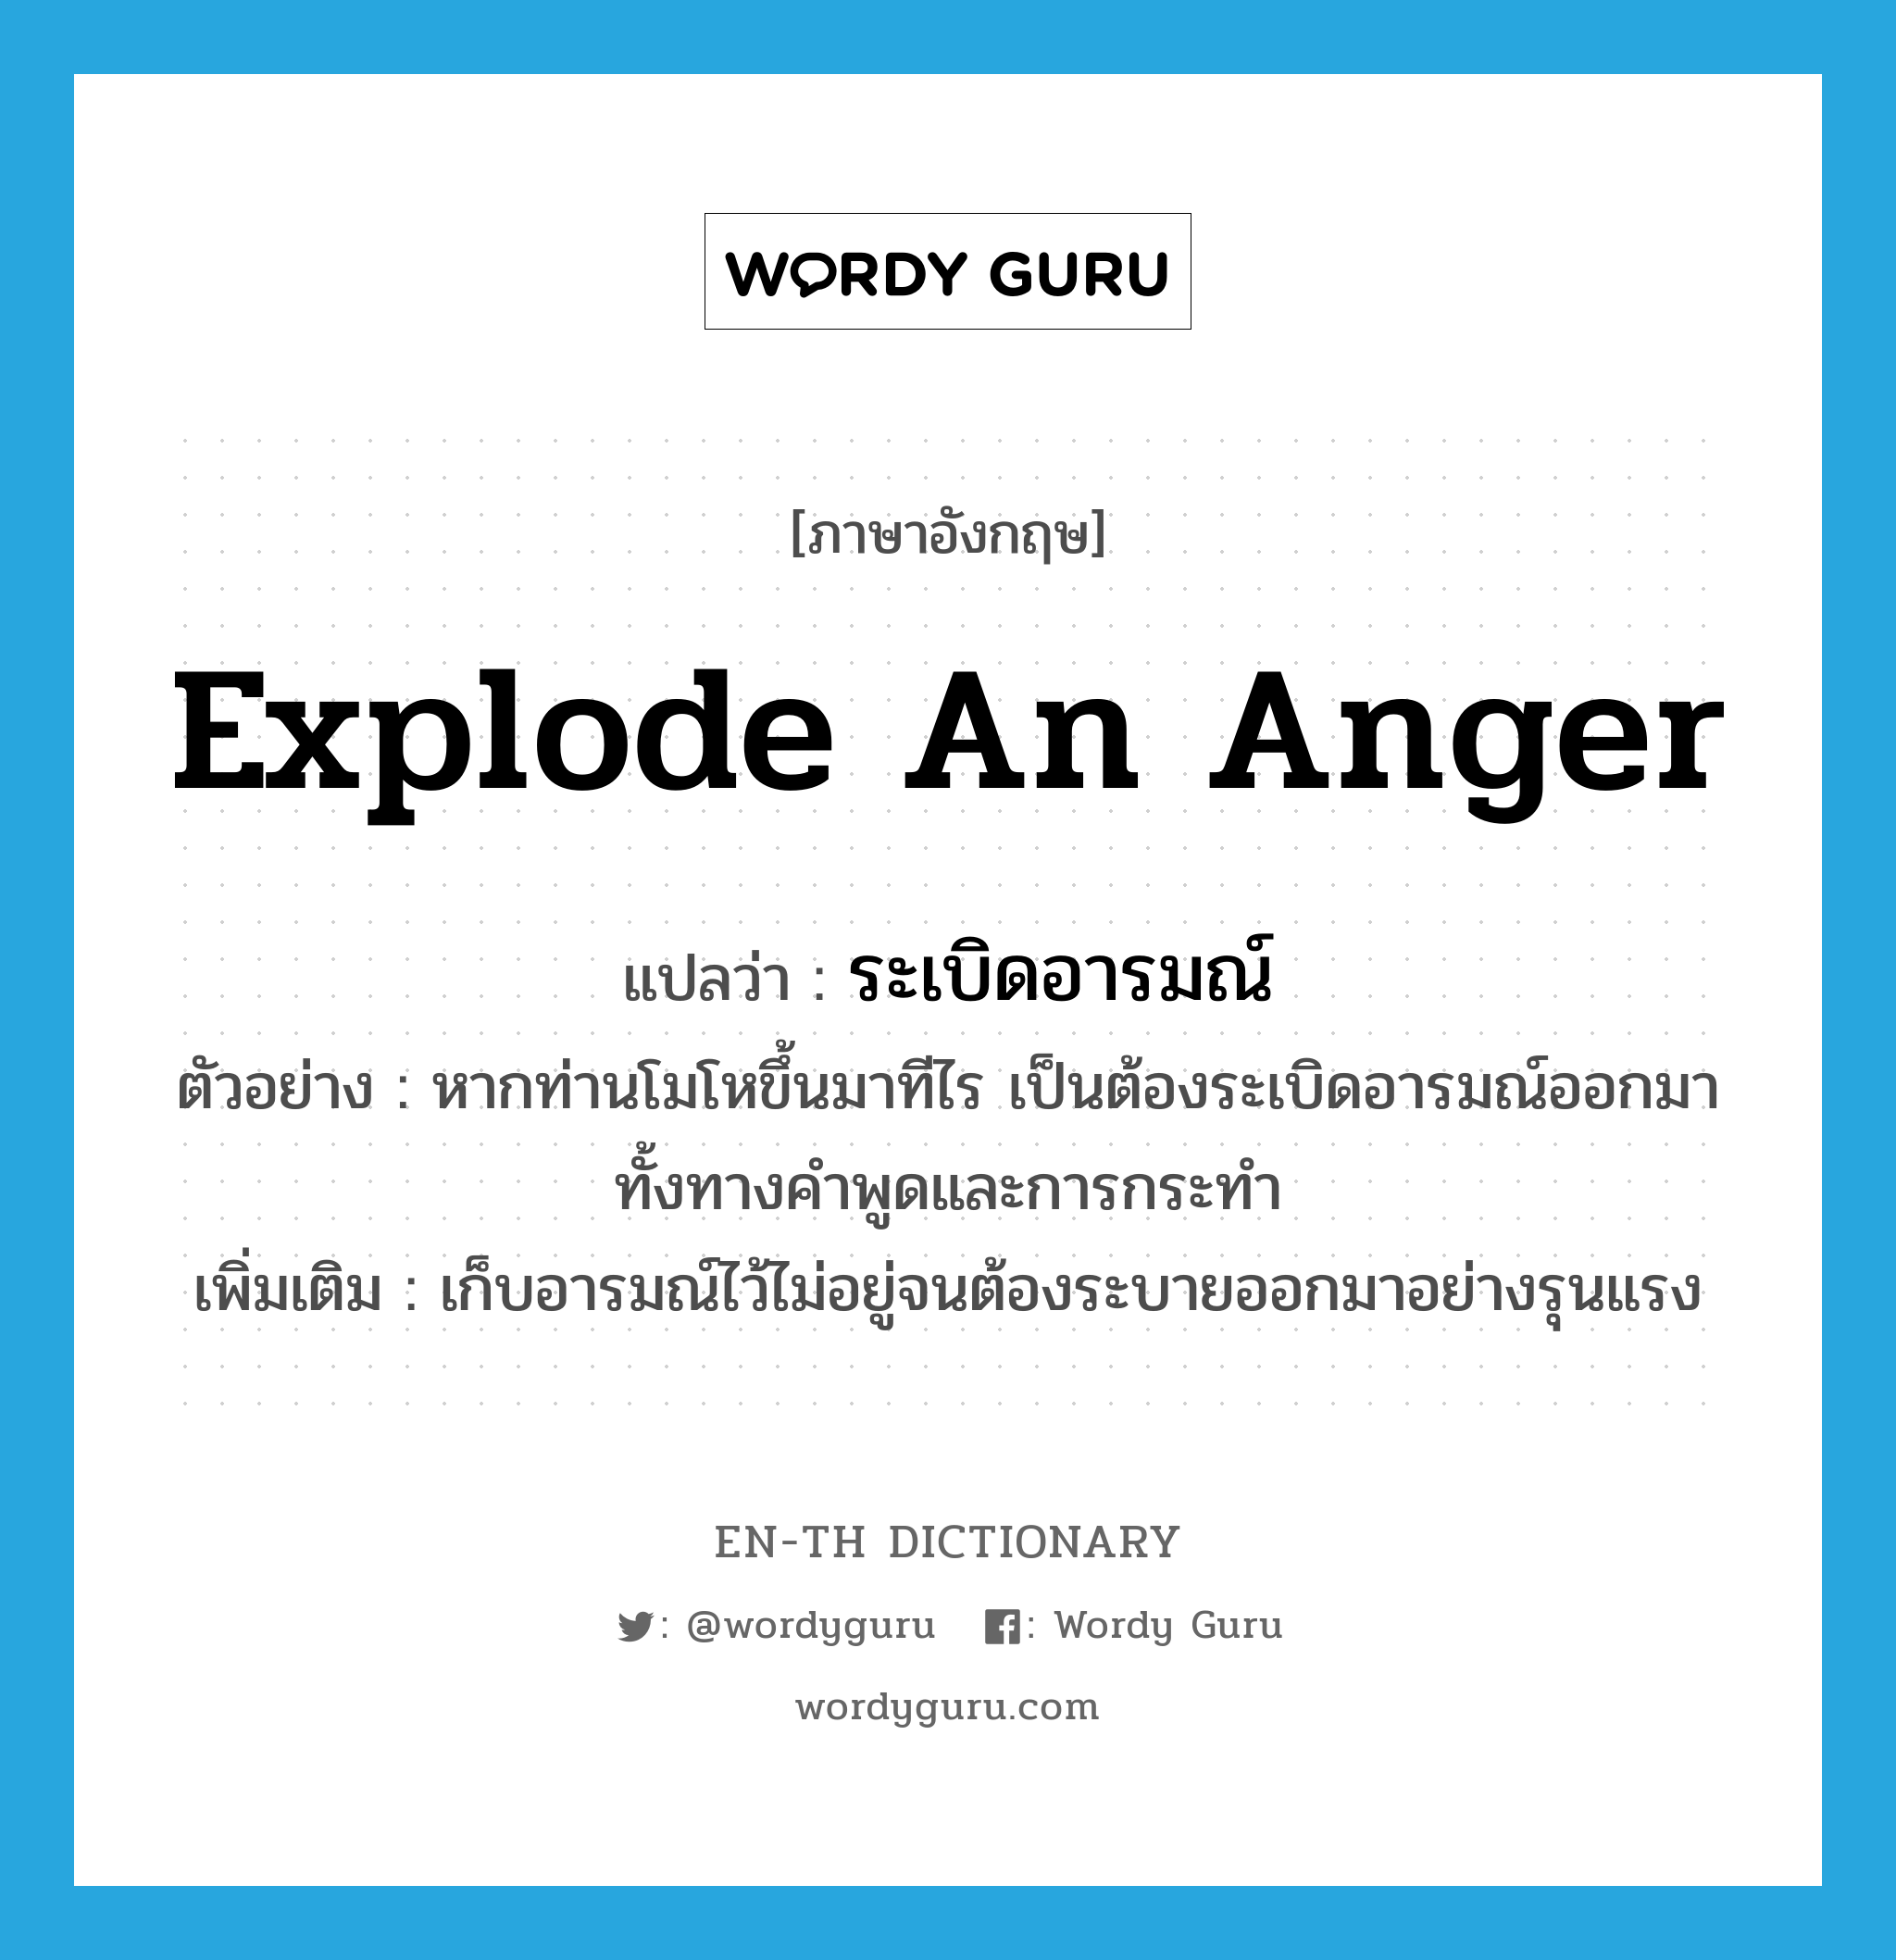 explode an anger แปลว่า?, คำศัพท์ภาษาอังกฤษ explode an anger แปลว่า ระเบิดอารมณ์ ประเภท V ตัวอย่าง หากท่านโมโหขึ้นมาทีไร เป็นต้องระเบิดอารมณ์ออกมา ทั้งทางคำพูดและการกระทำ เพิ่มเติม เก็บอารมณ์ไว้ไม่อยู่จนต้องระบายออกมาอย่างรุนแรง หมวด V